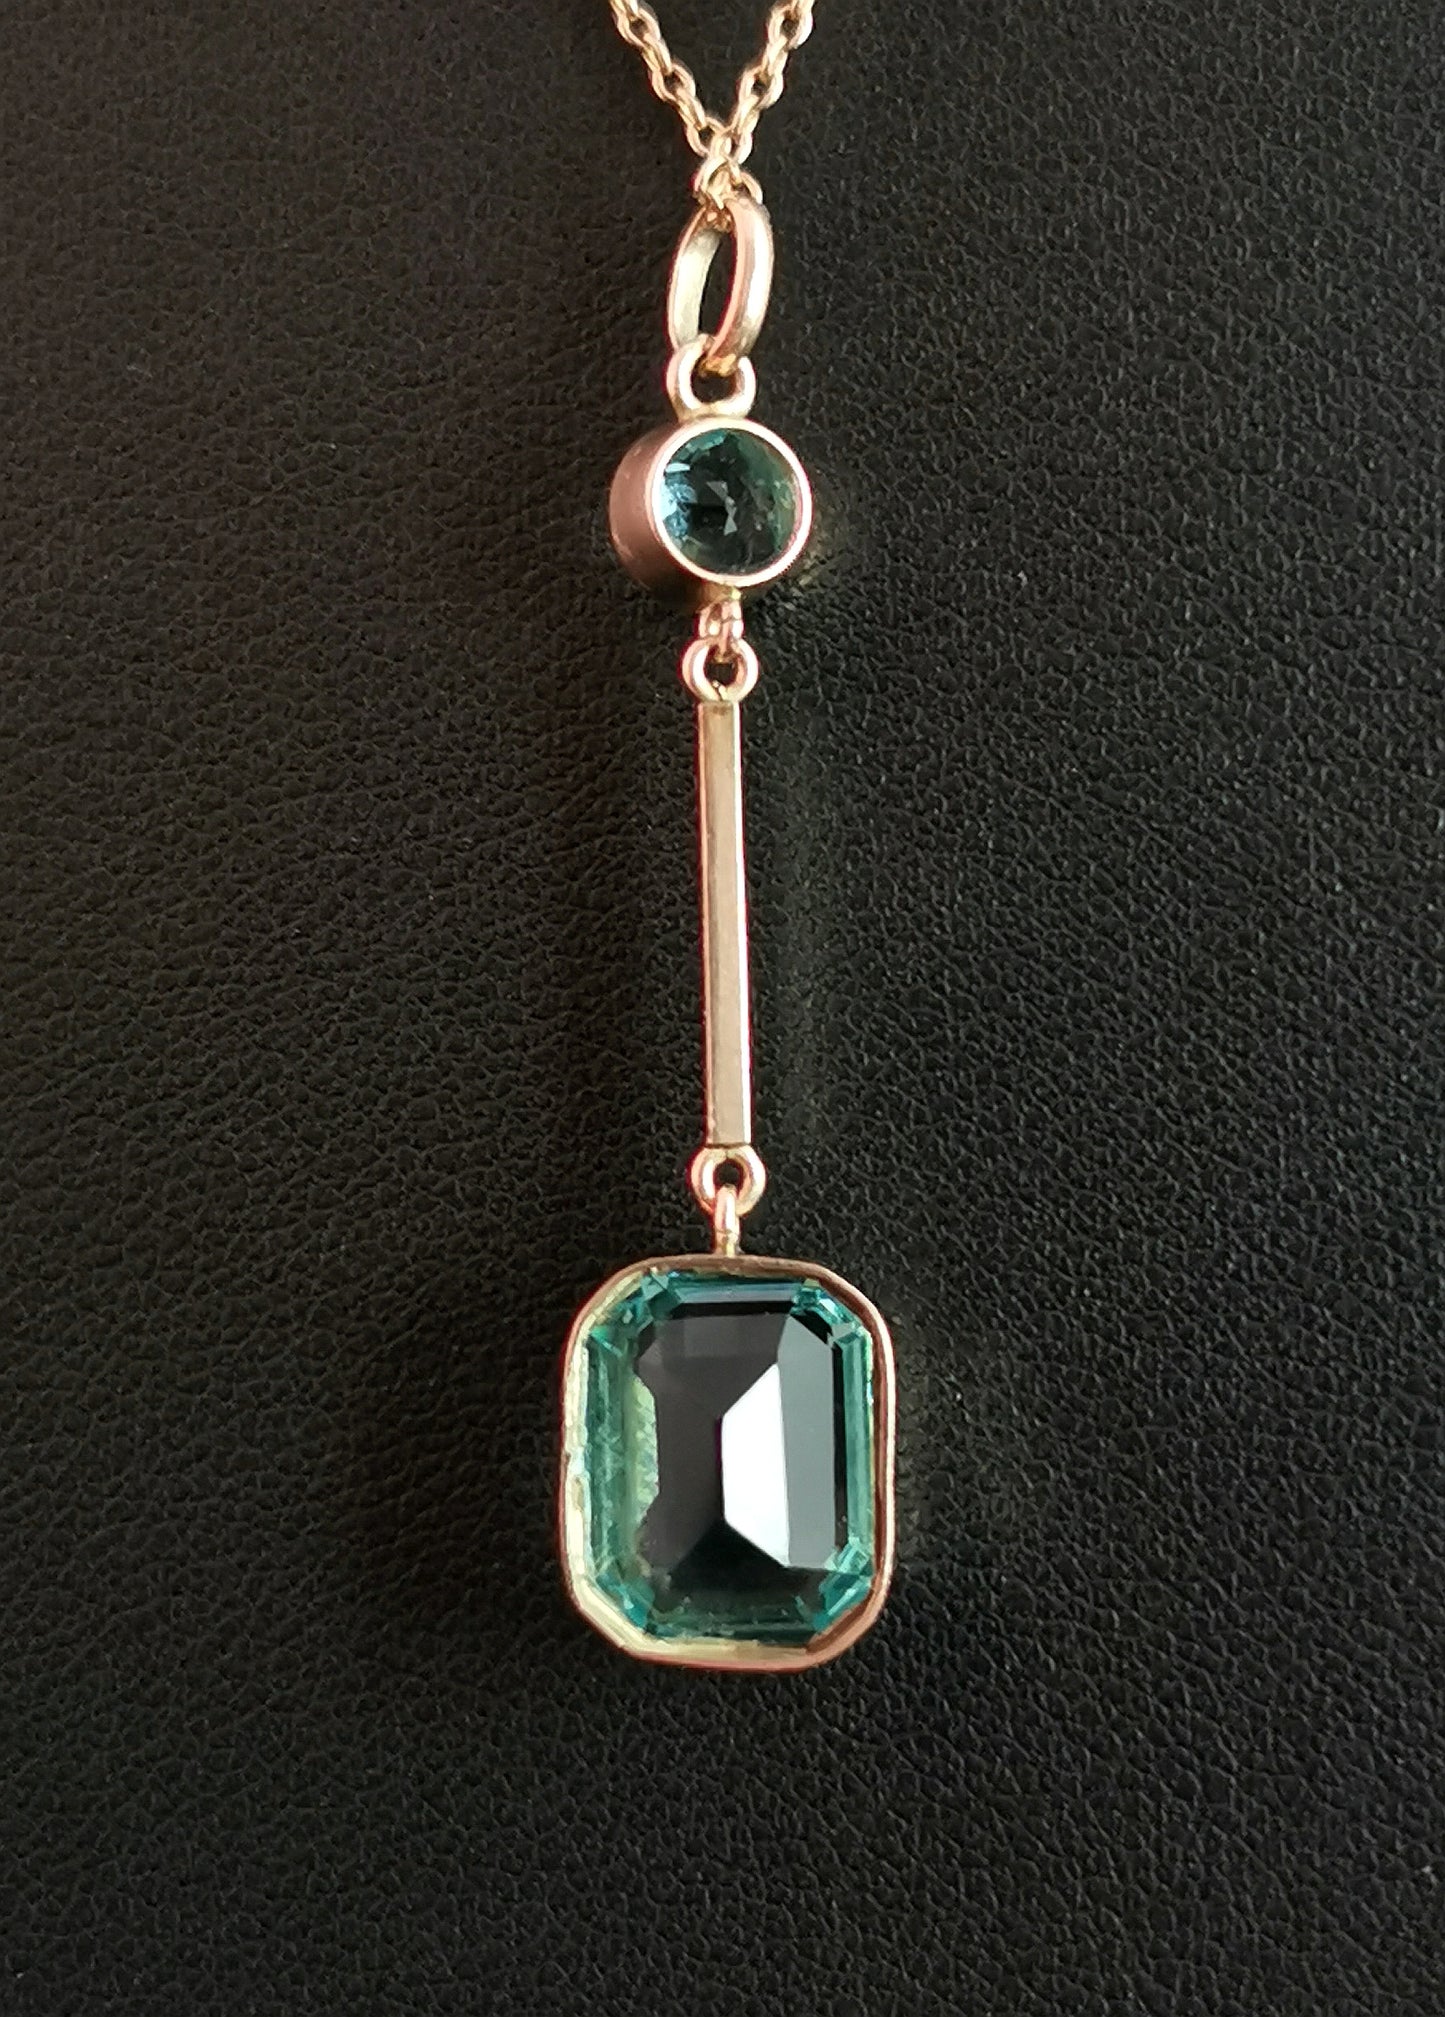 Antique Art Deco Blue Zircon drop pendant, 9ct gold necklace